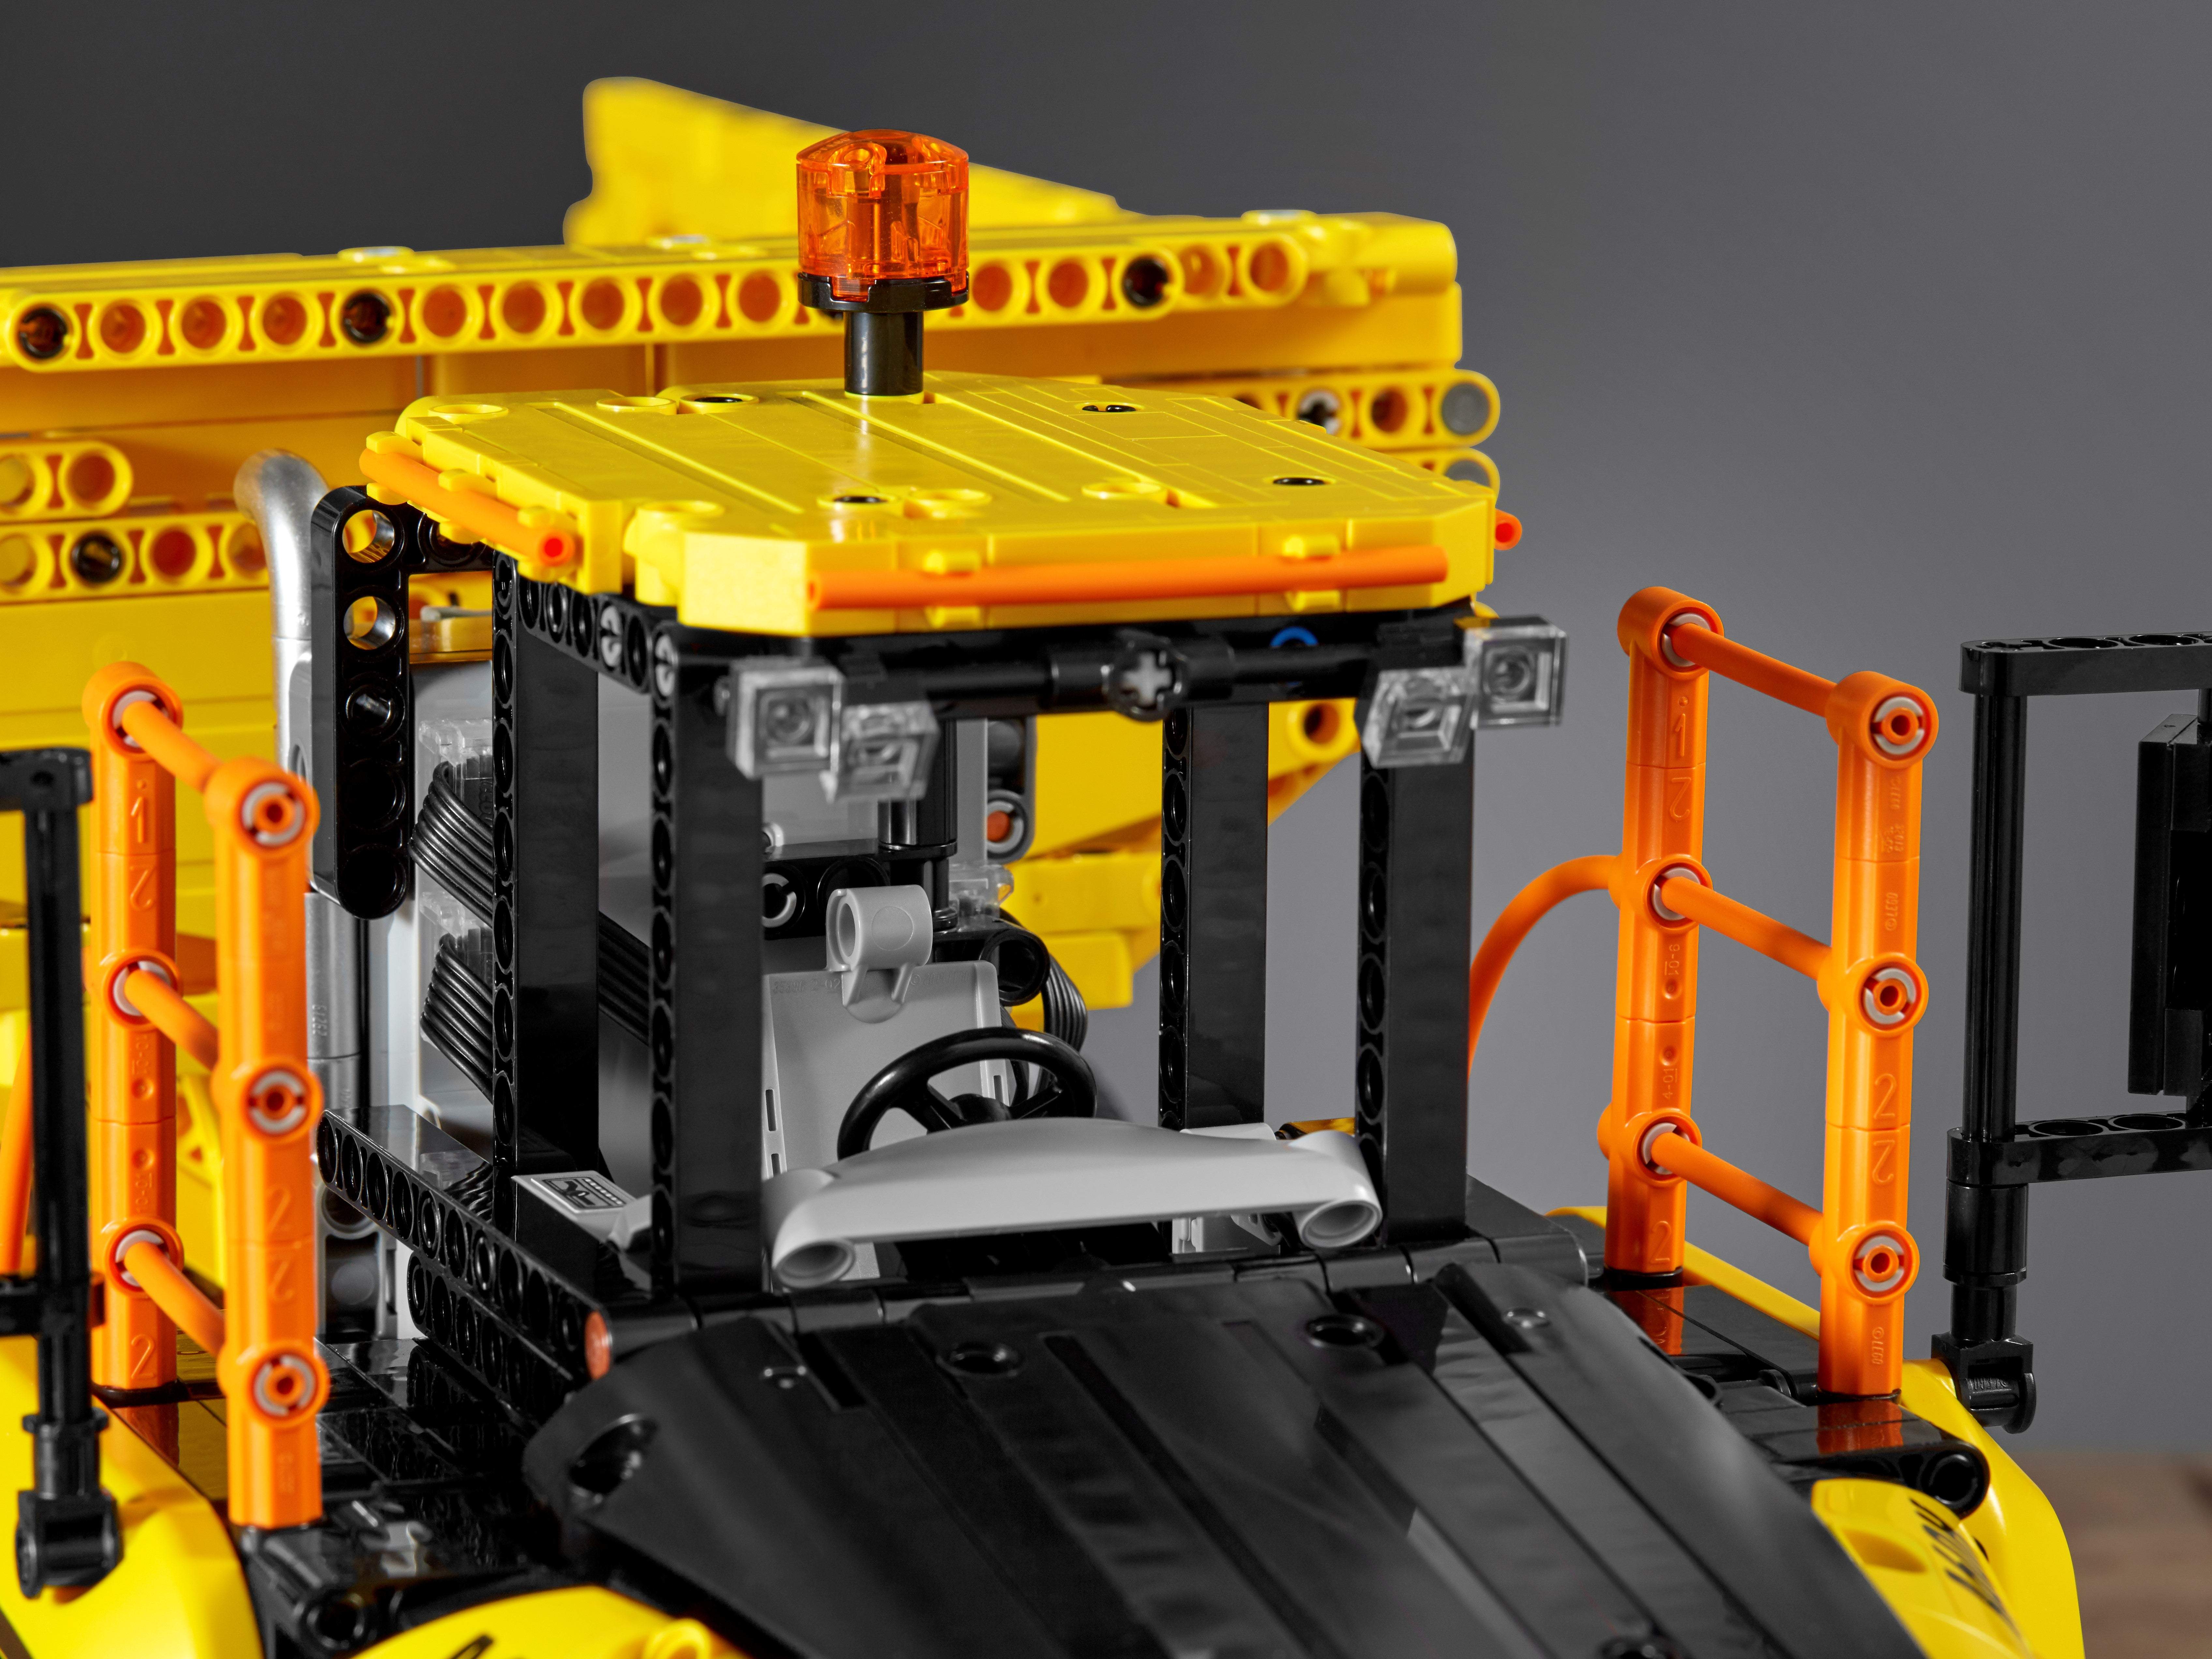 Конструктор LEGO Technic «Самосвал Volvo 6х6» 42114 / 2193 детали